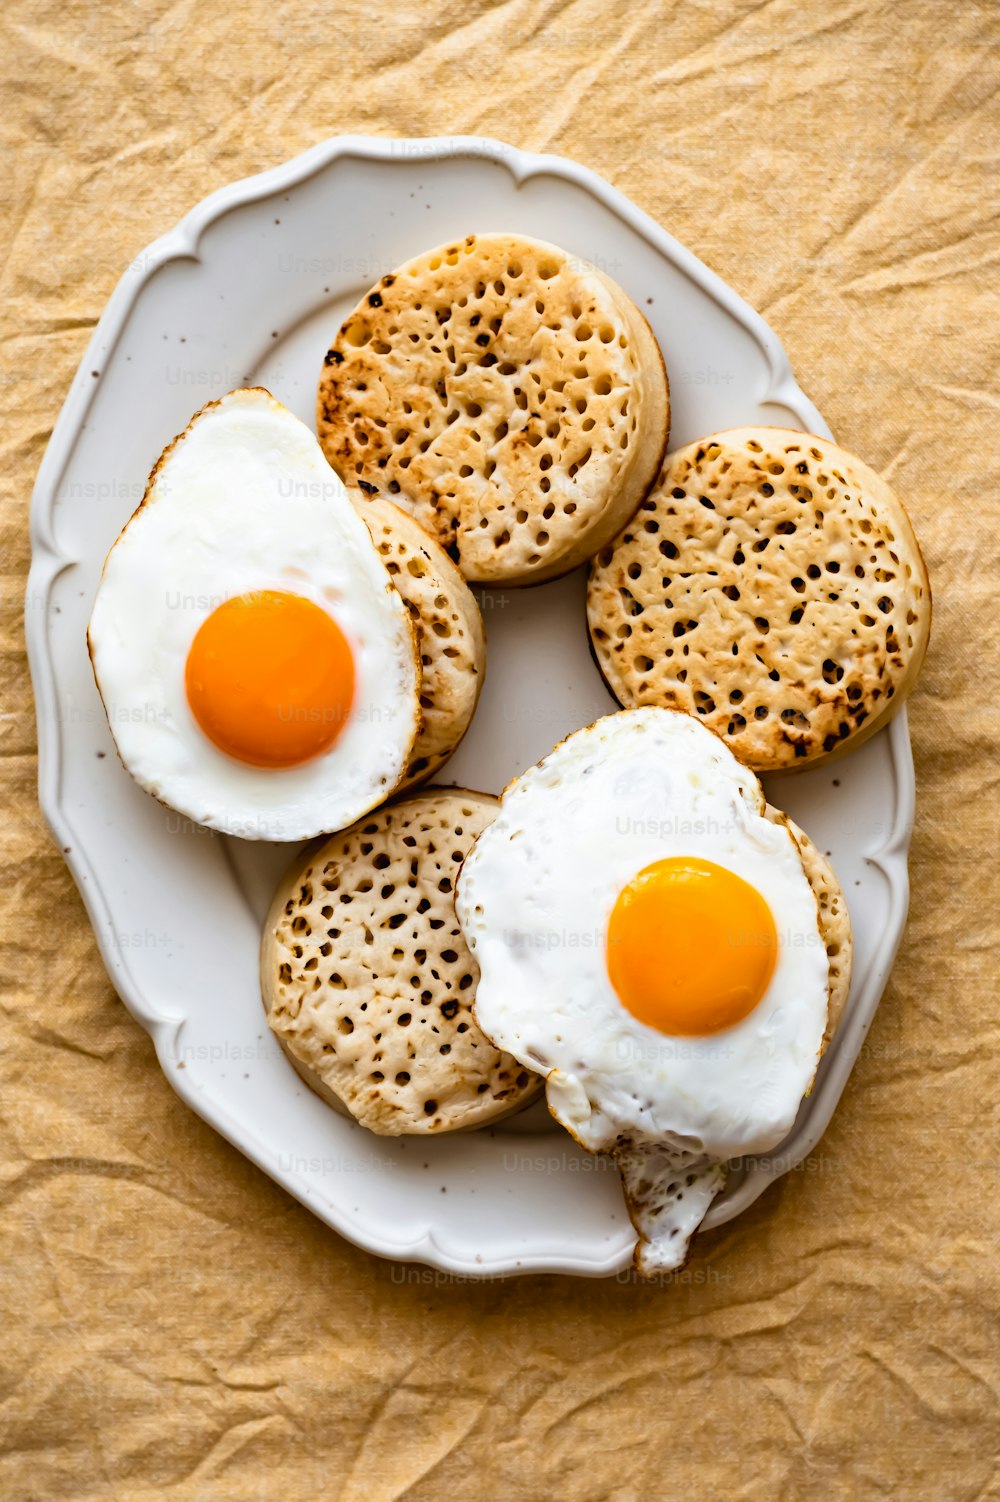 크래커와 계란을 얹은 하얀 접시